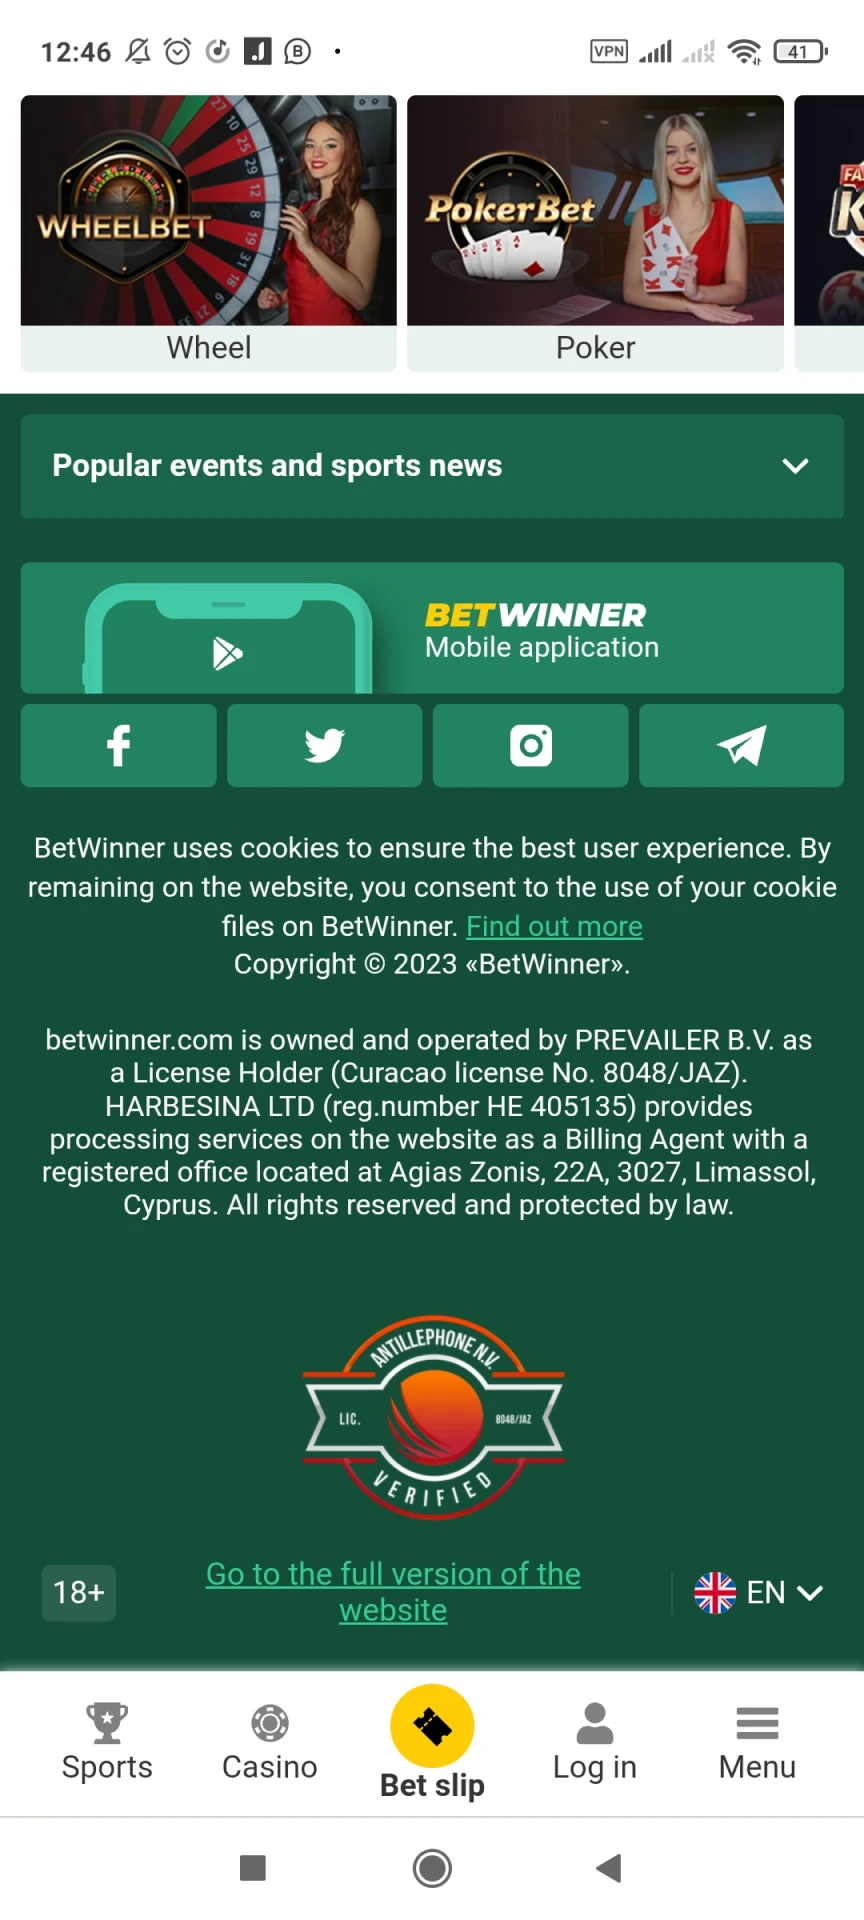 انقر فوق الزر للذهاب لتنزيل تطبيق Betwinner لنظام Android.